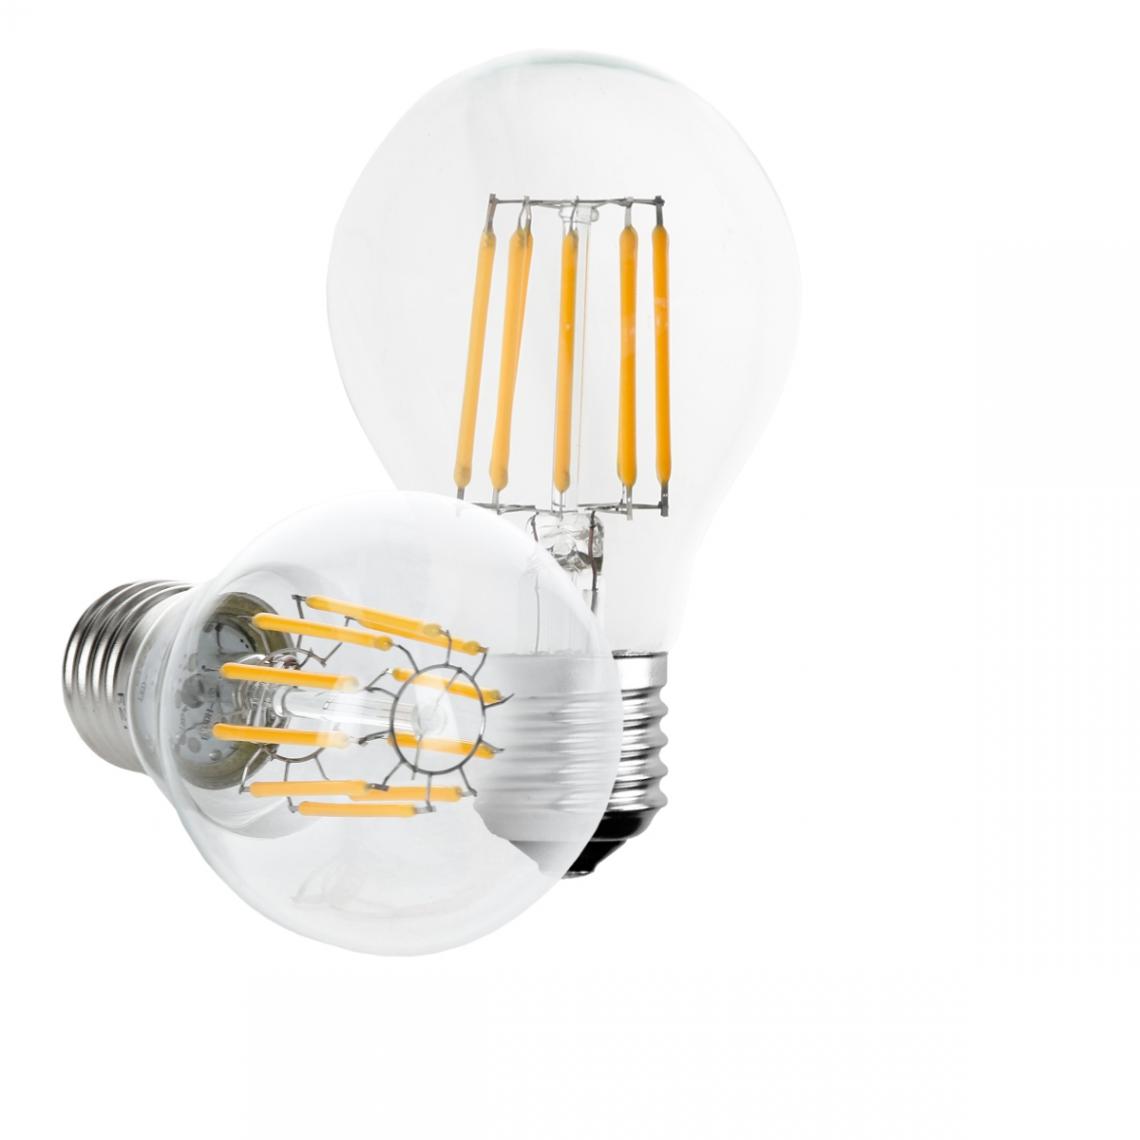 Ecd Germany - 12 x ampoule LED filament E27 10W blanc chaud - Ampoules LED